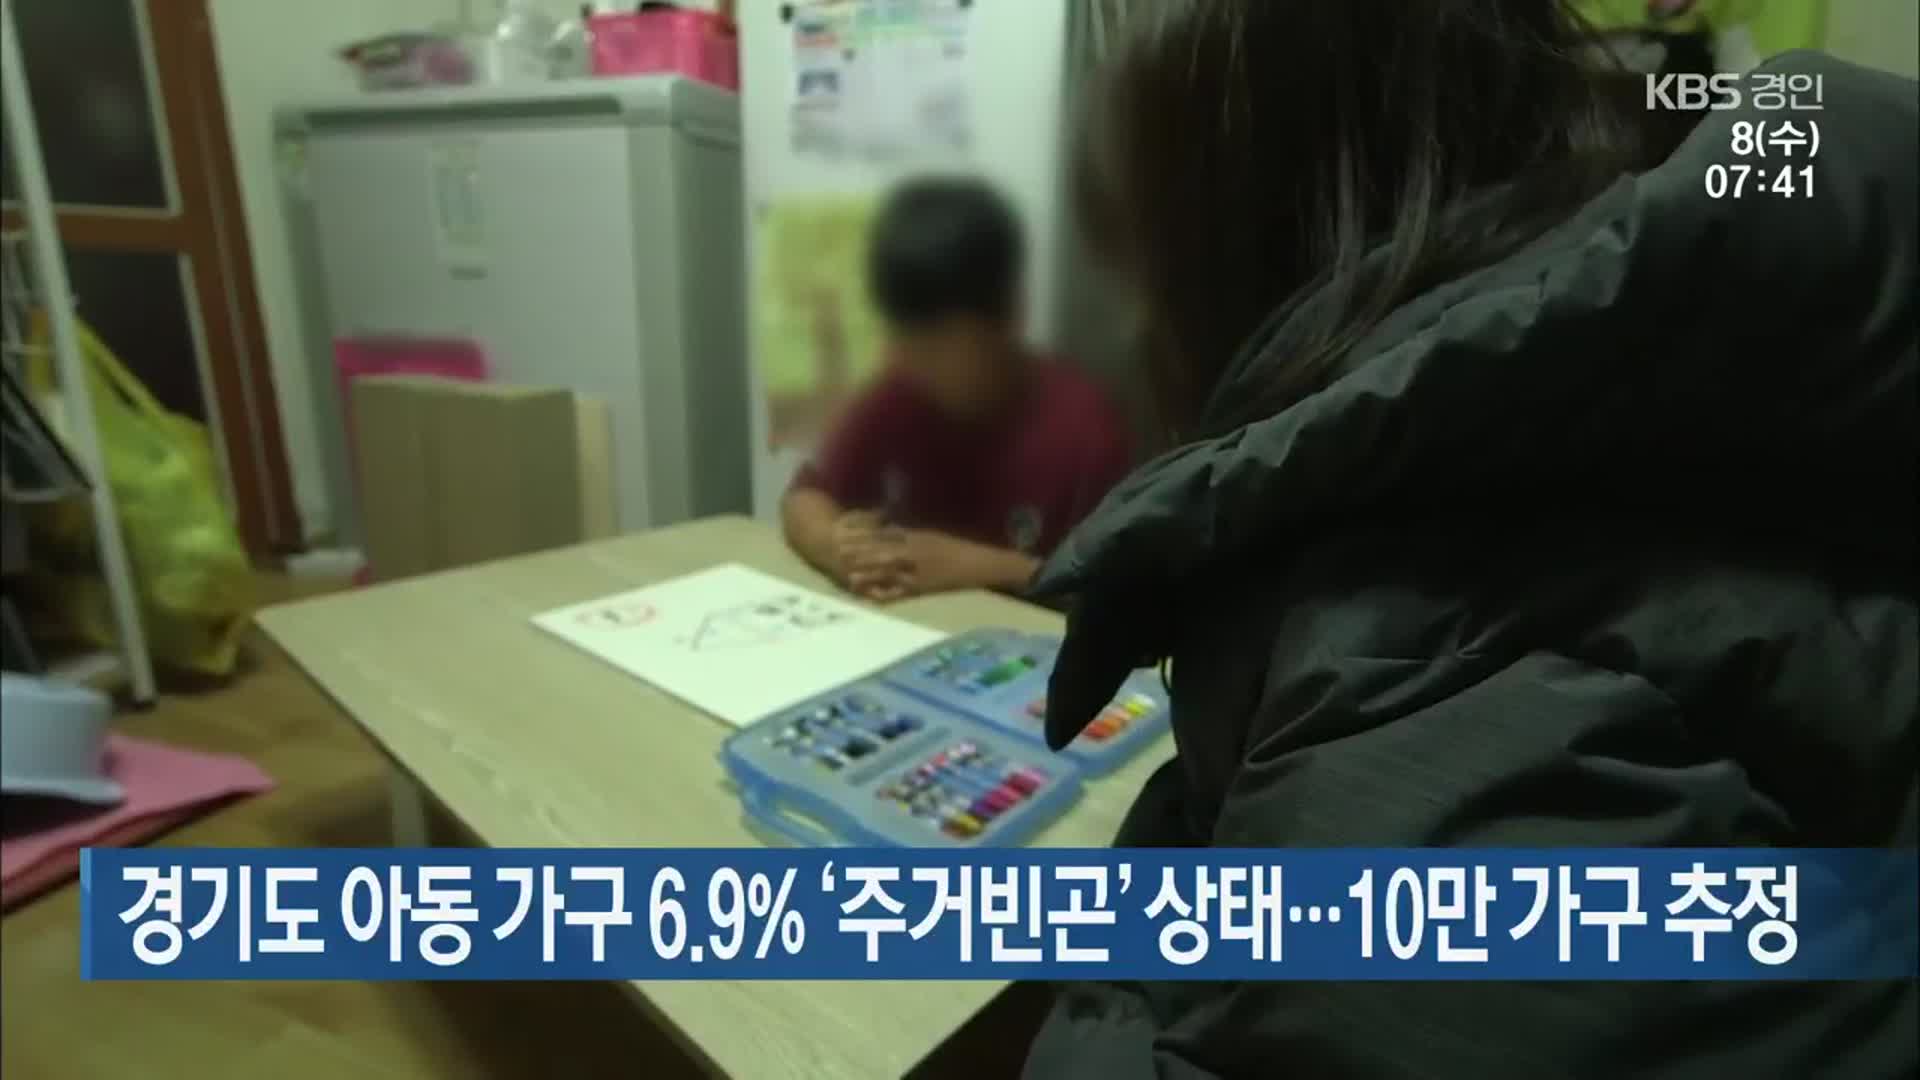 경기도 아동 가구 6.9% ‘주거빈곤’ 상태…10만 가구 추정